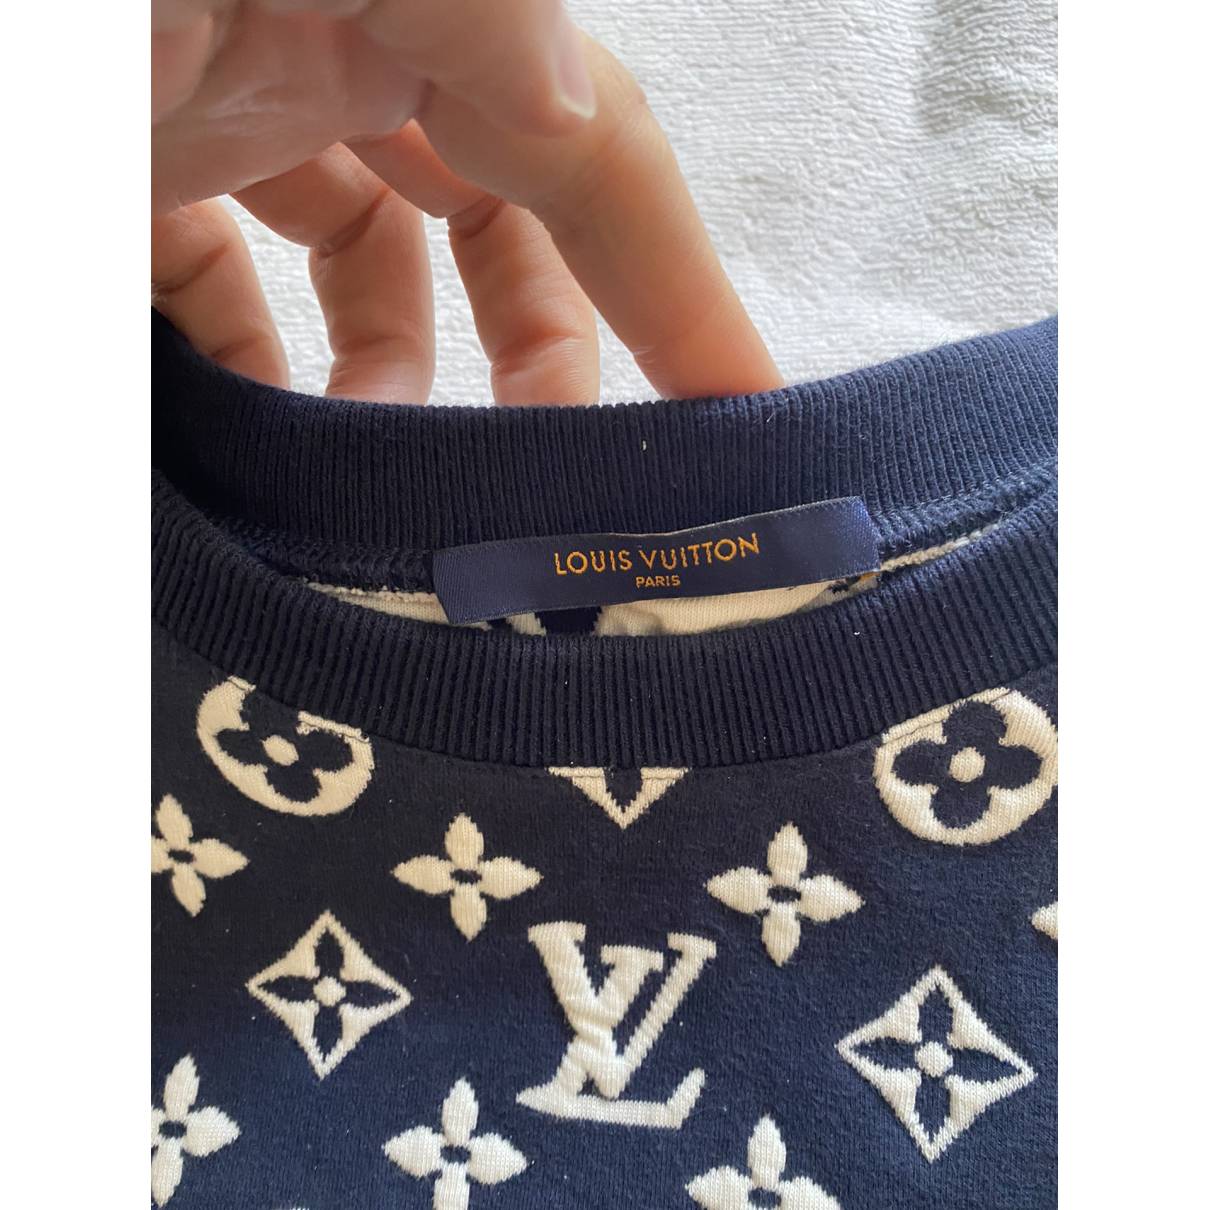 Sweatshirt Louis Vuitton Navy size S International in Cotton - 29843954